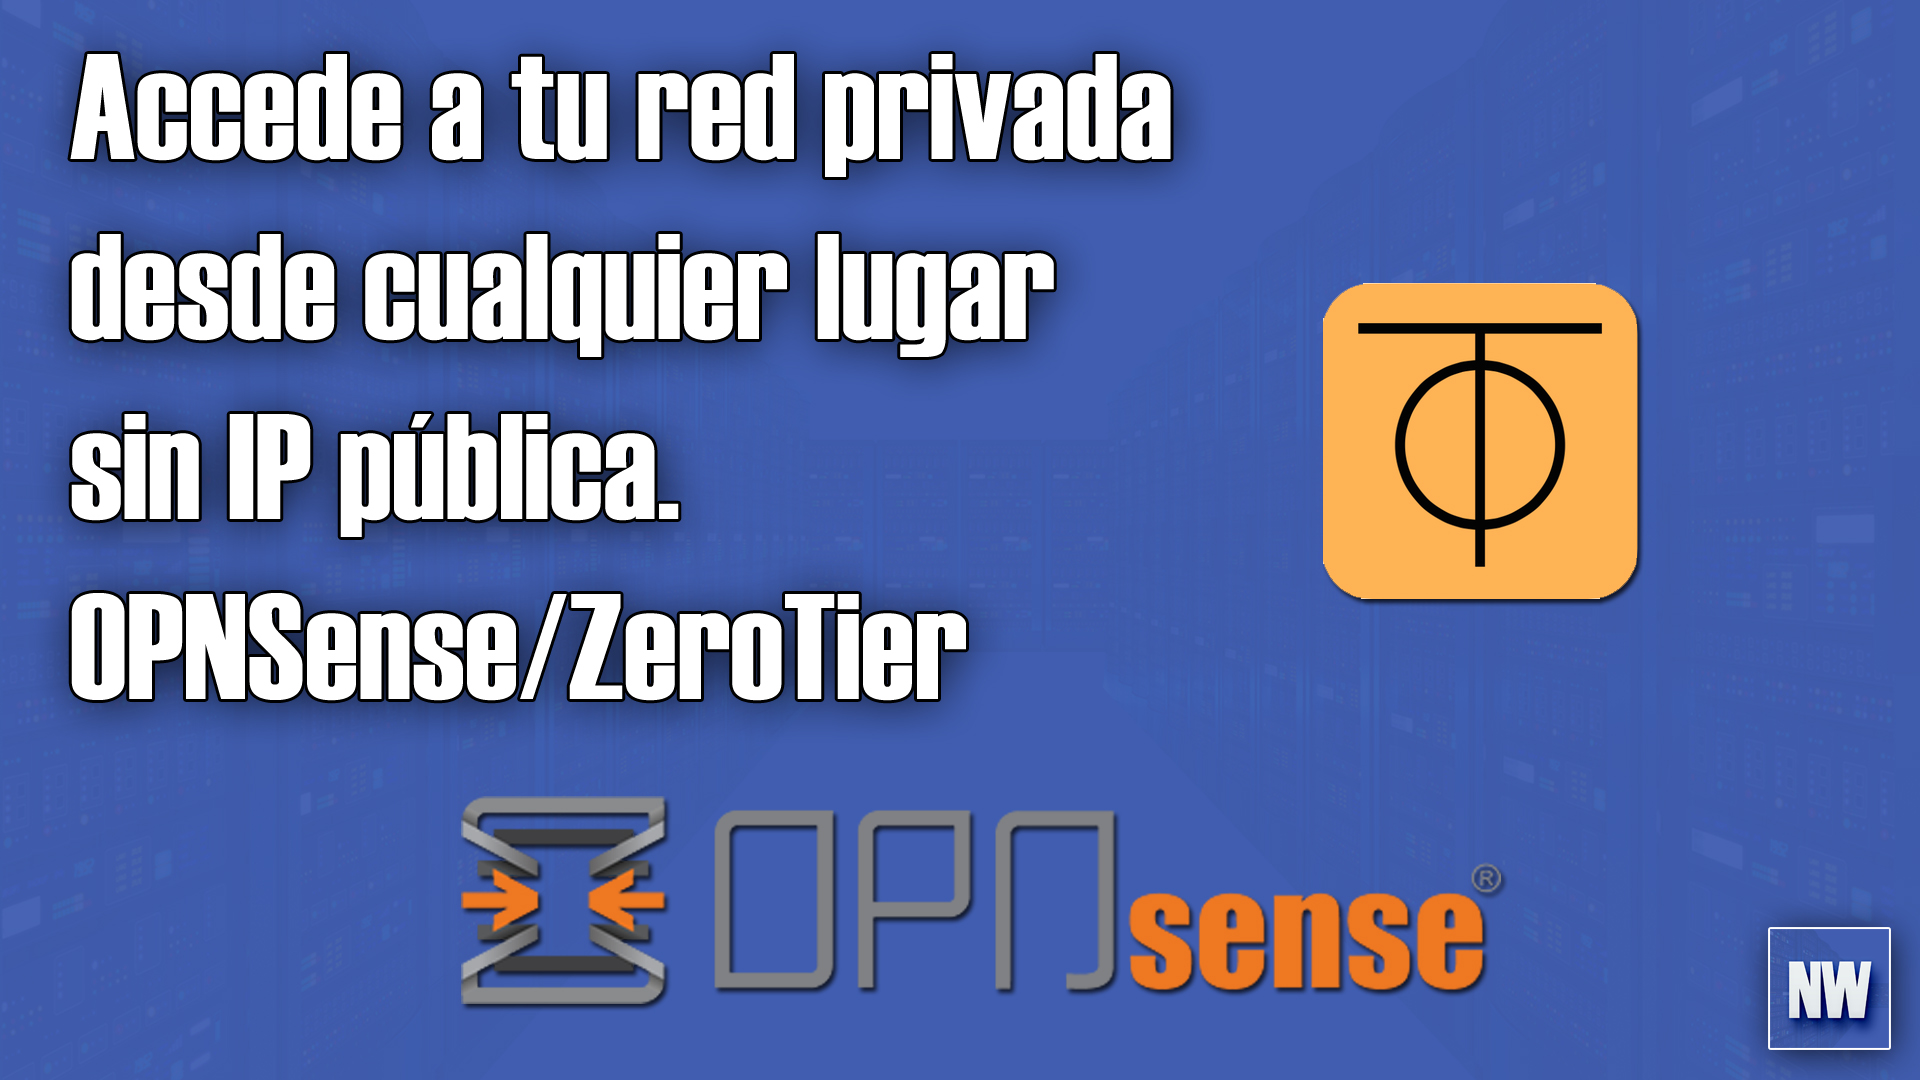 Accede a tu red desde cualquier lugar sin IP pública - OPNSense - ZeroTier